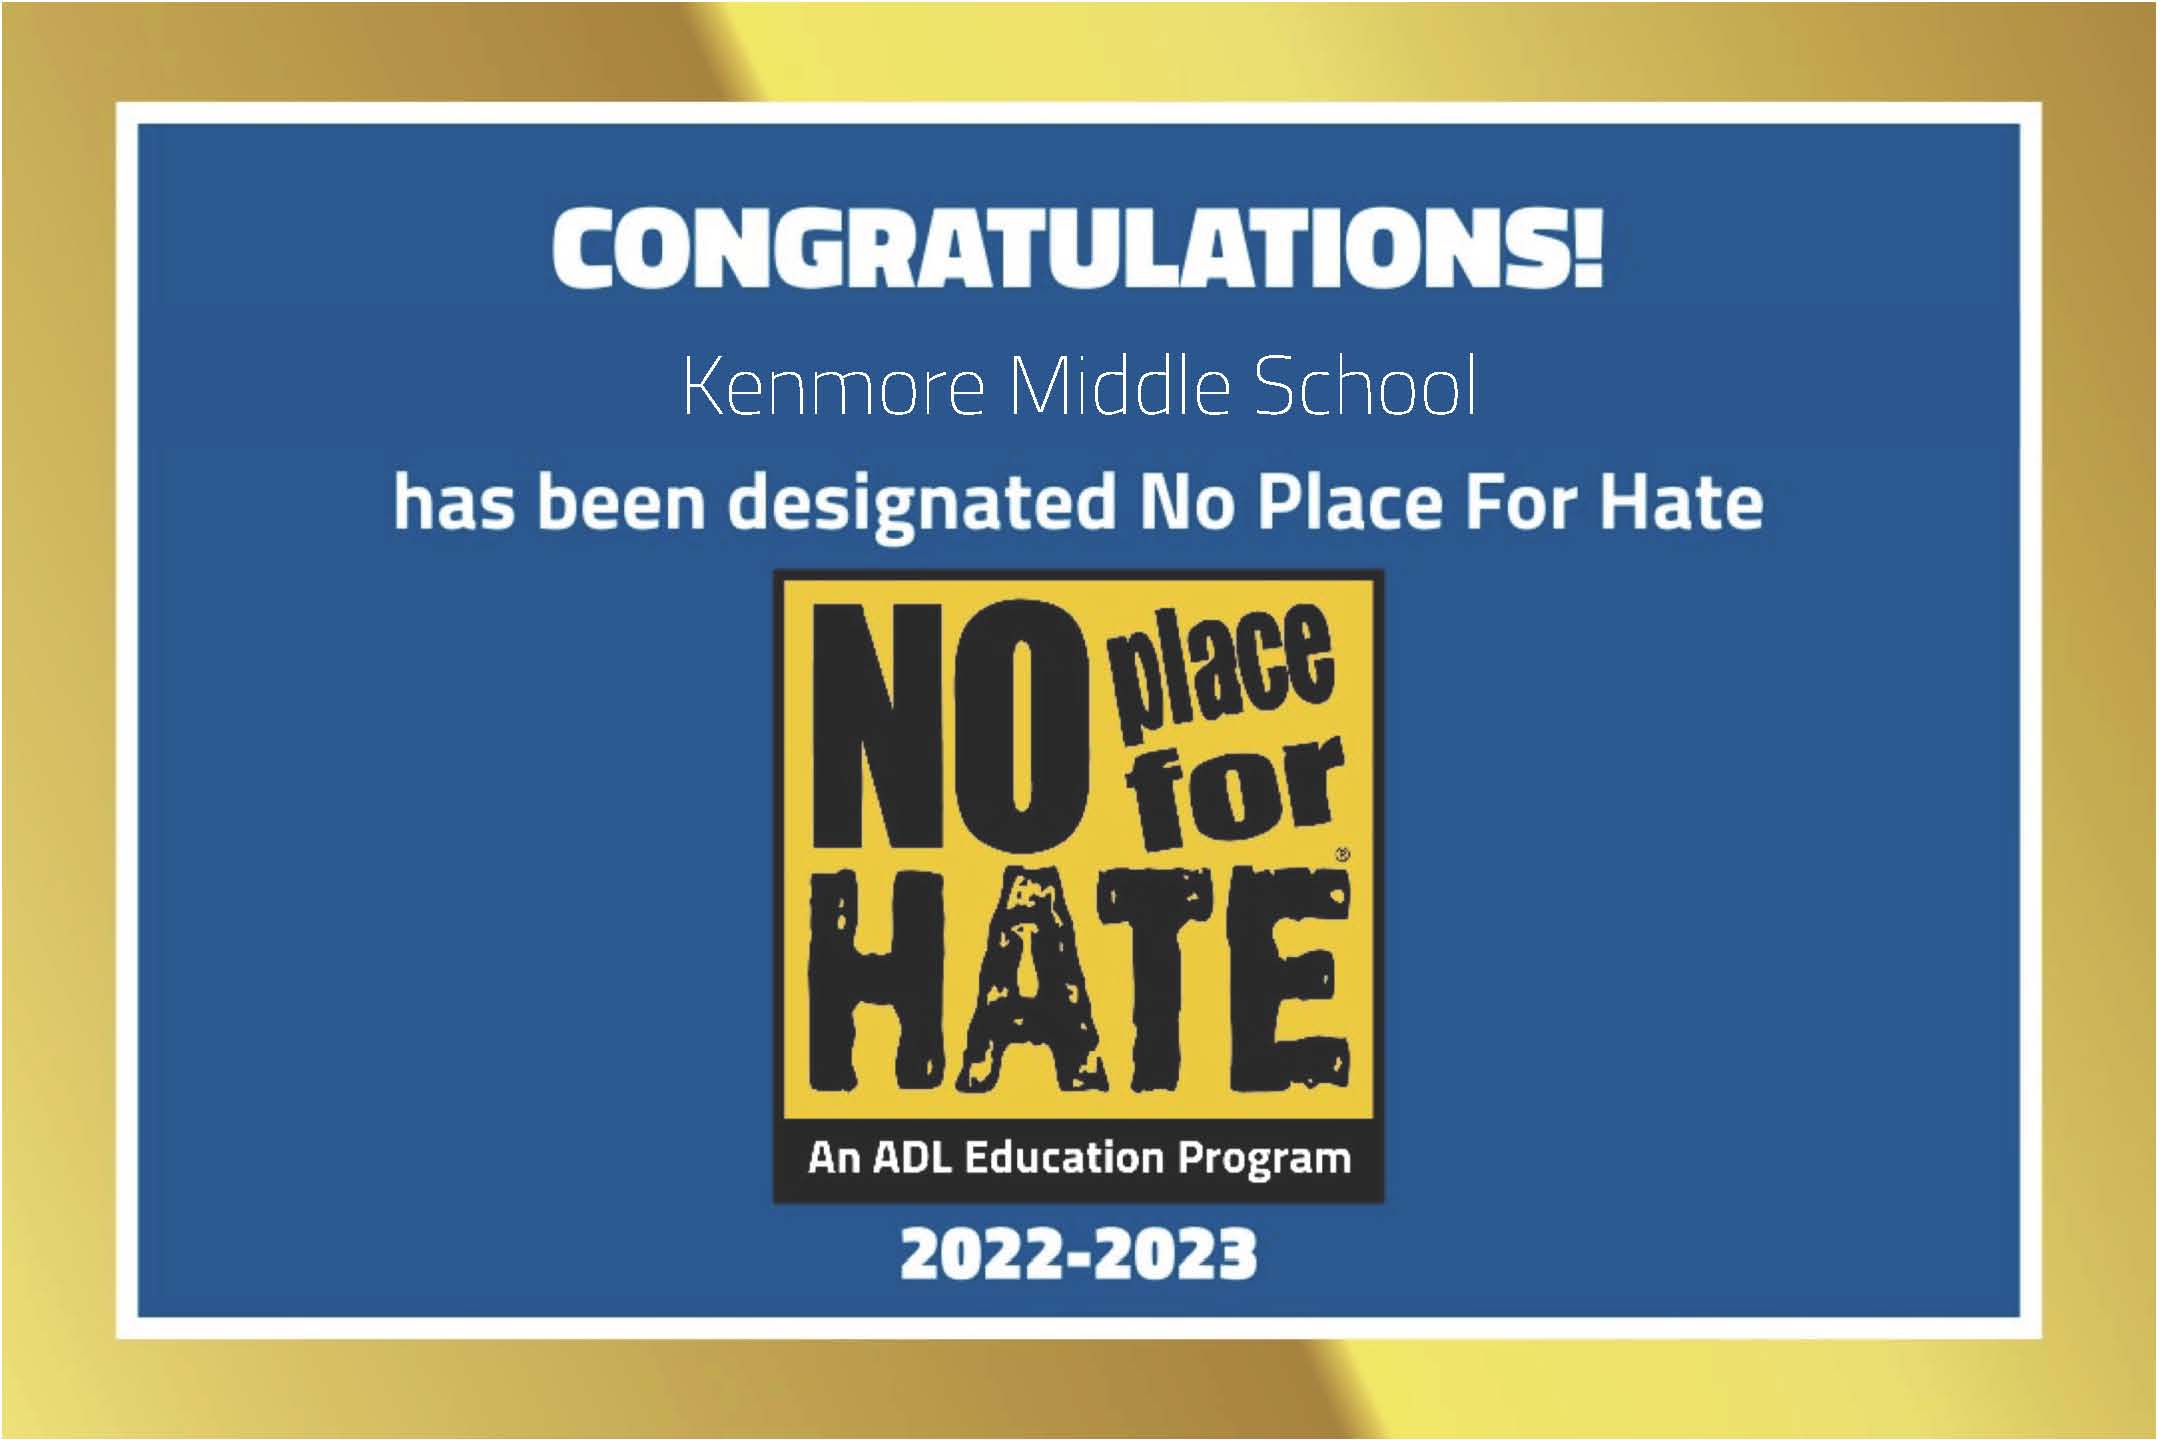 ¡Kenmore ha sido designada como una escuela No Place for Hate para el año escolar 2022-2023!